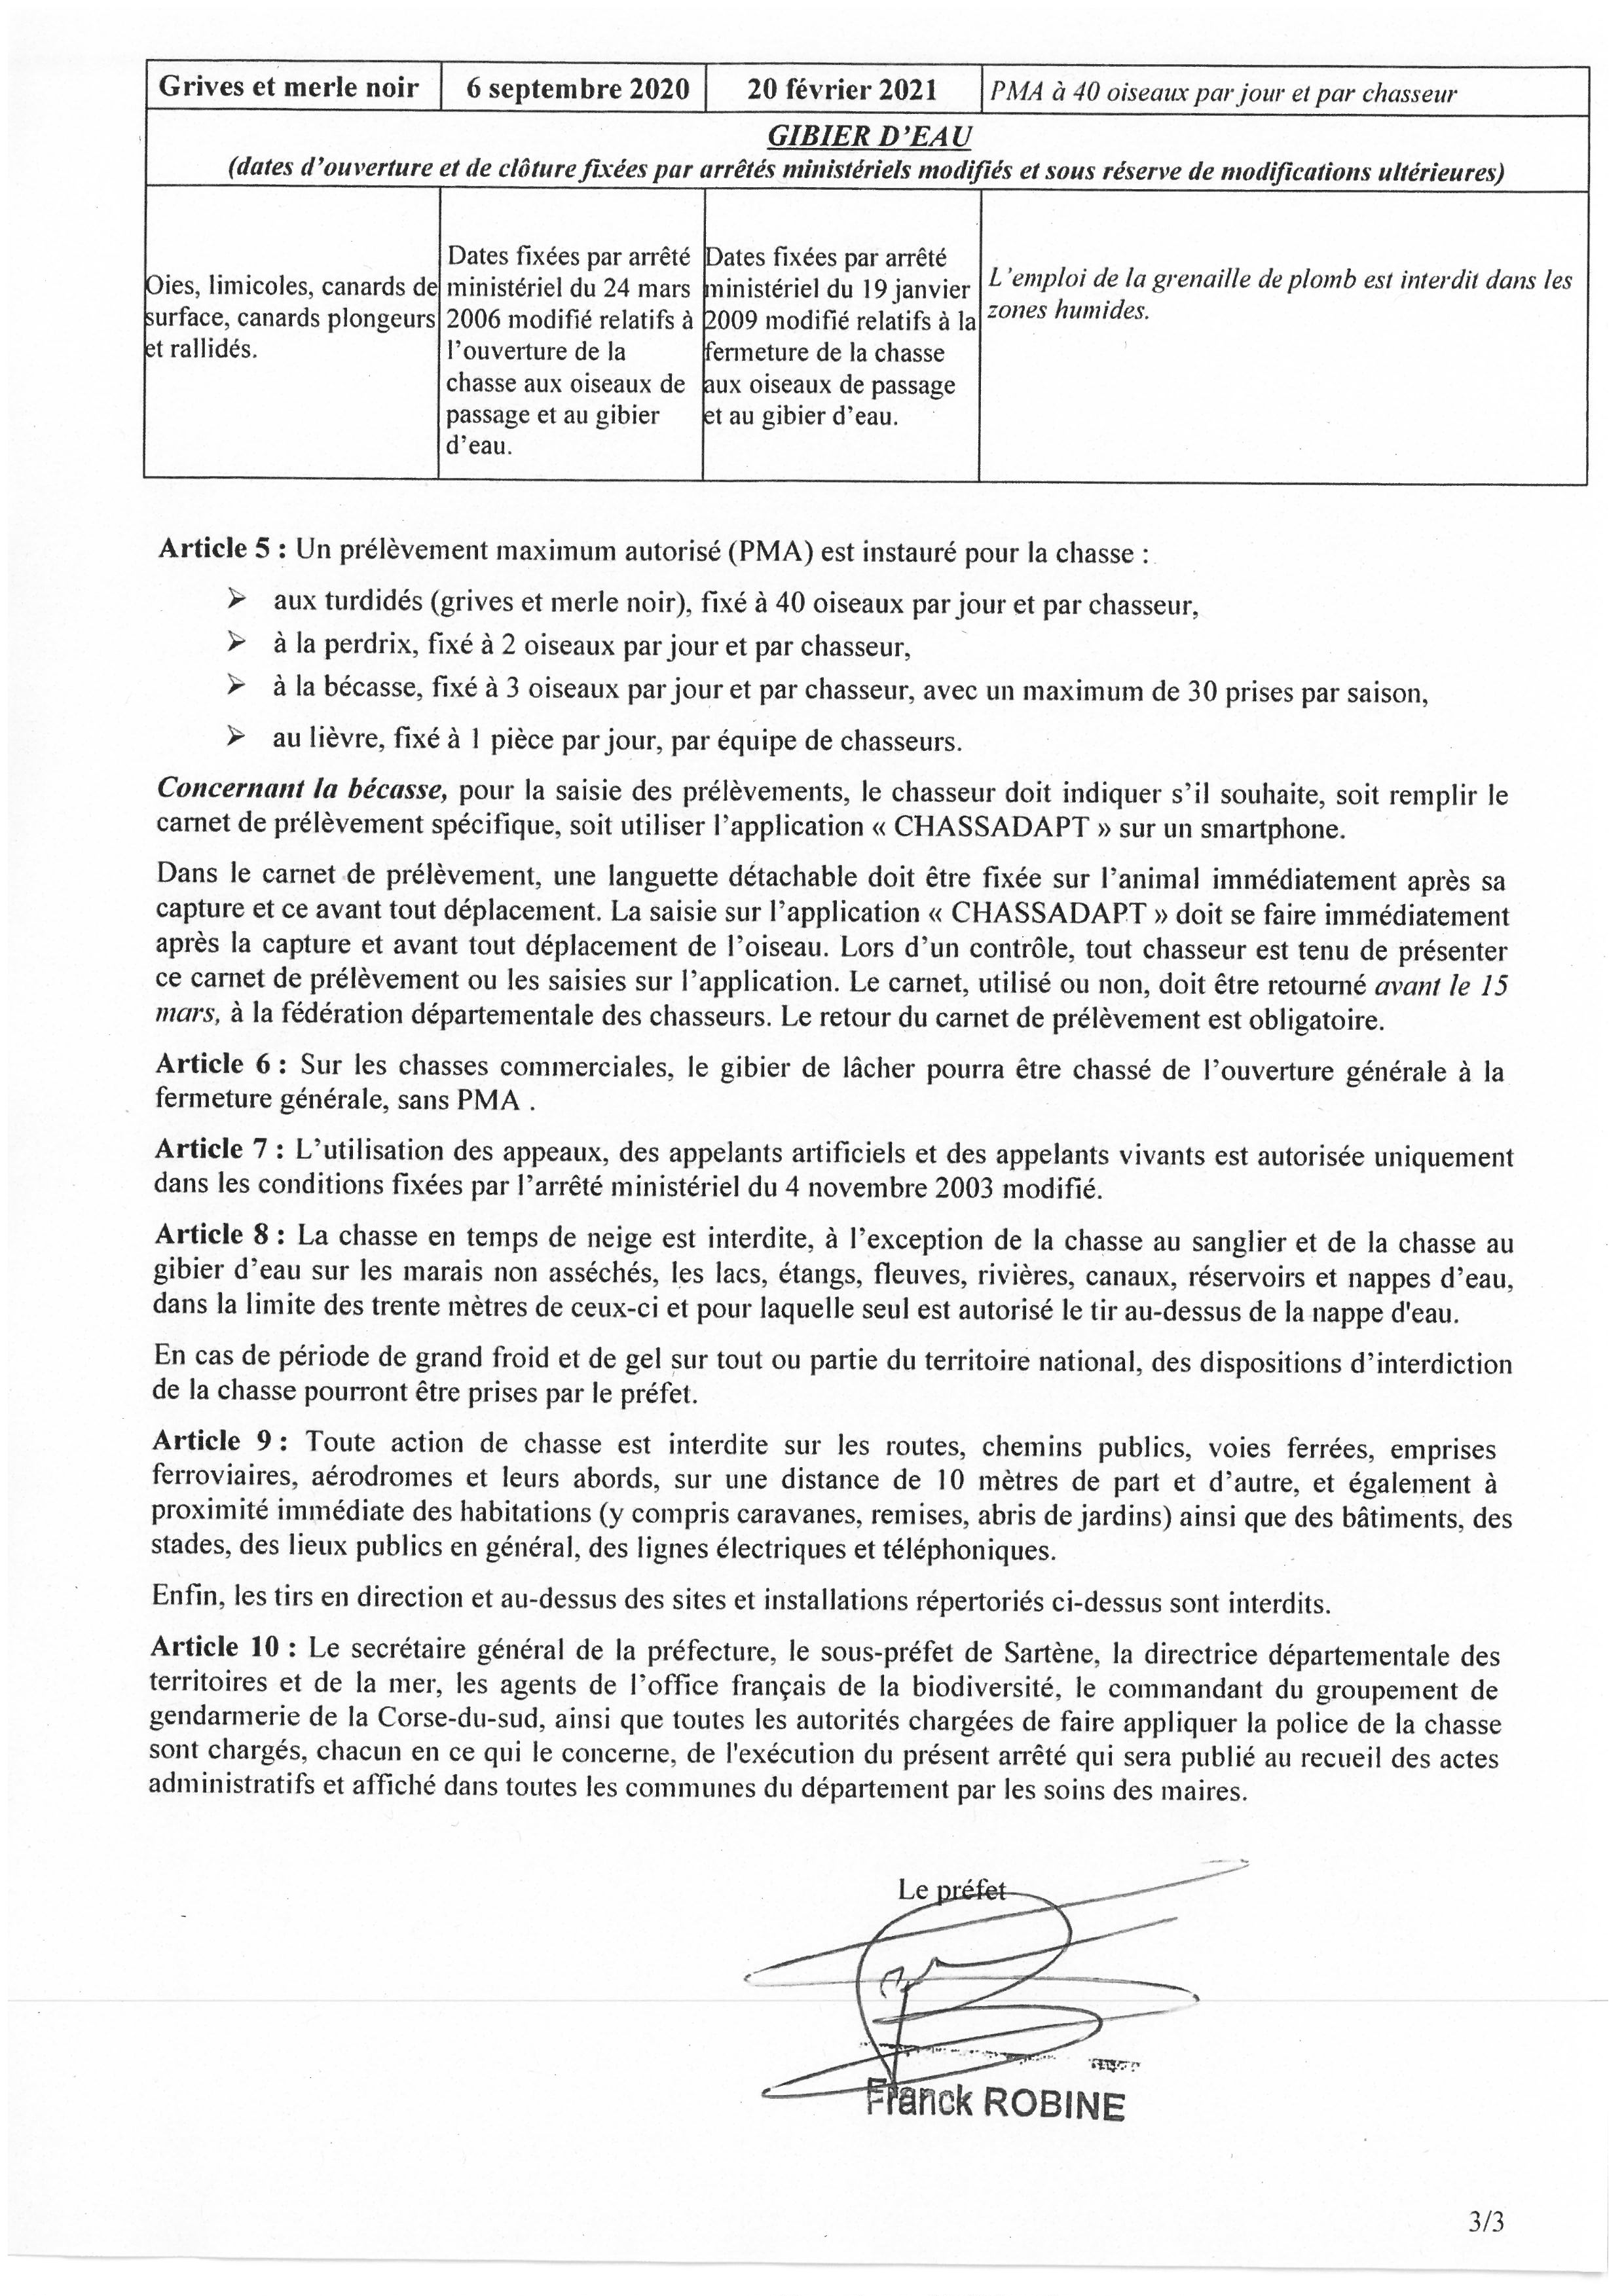  Arrêté n°2A2020-07-10-002 du 10 juillet 2020 portant sur l'ouverture et clôture de la chasse pour la campagne 2020-2021 dans le département de la Corse du sud